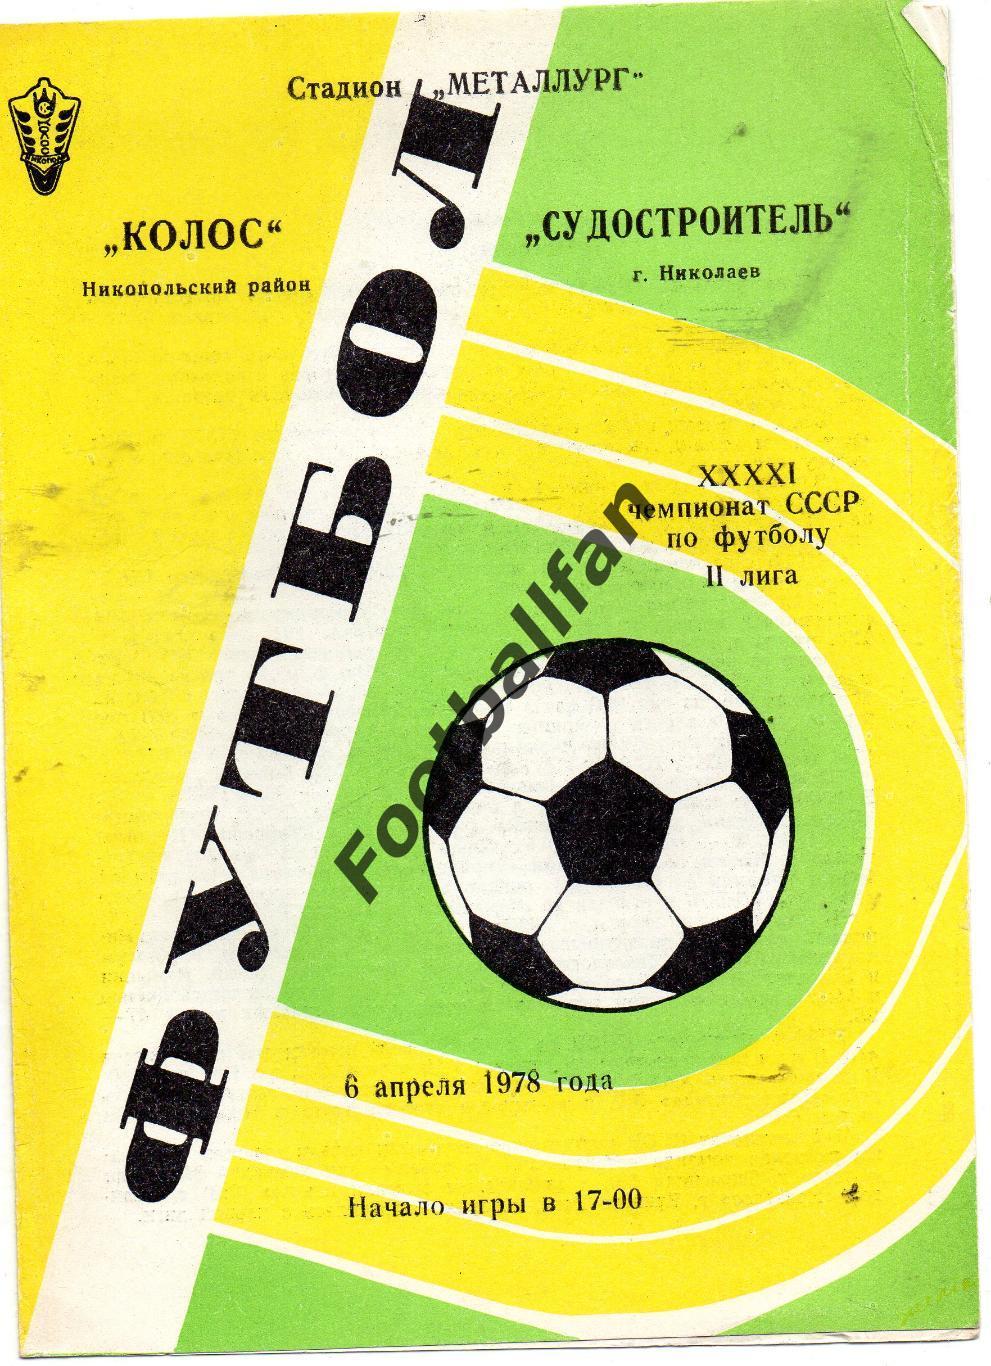 Колос Никополь - Судостроитель Николаев 1978